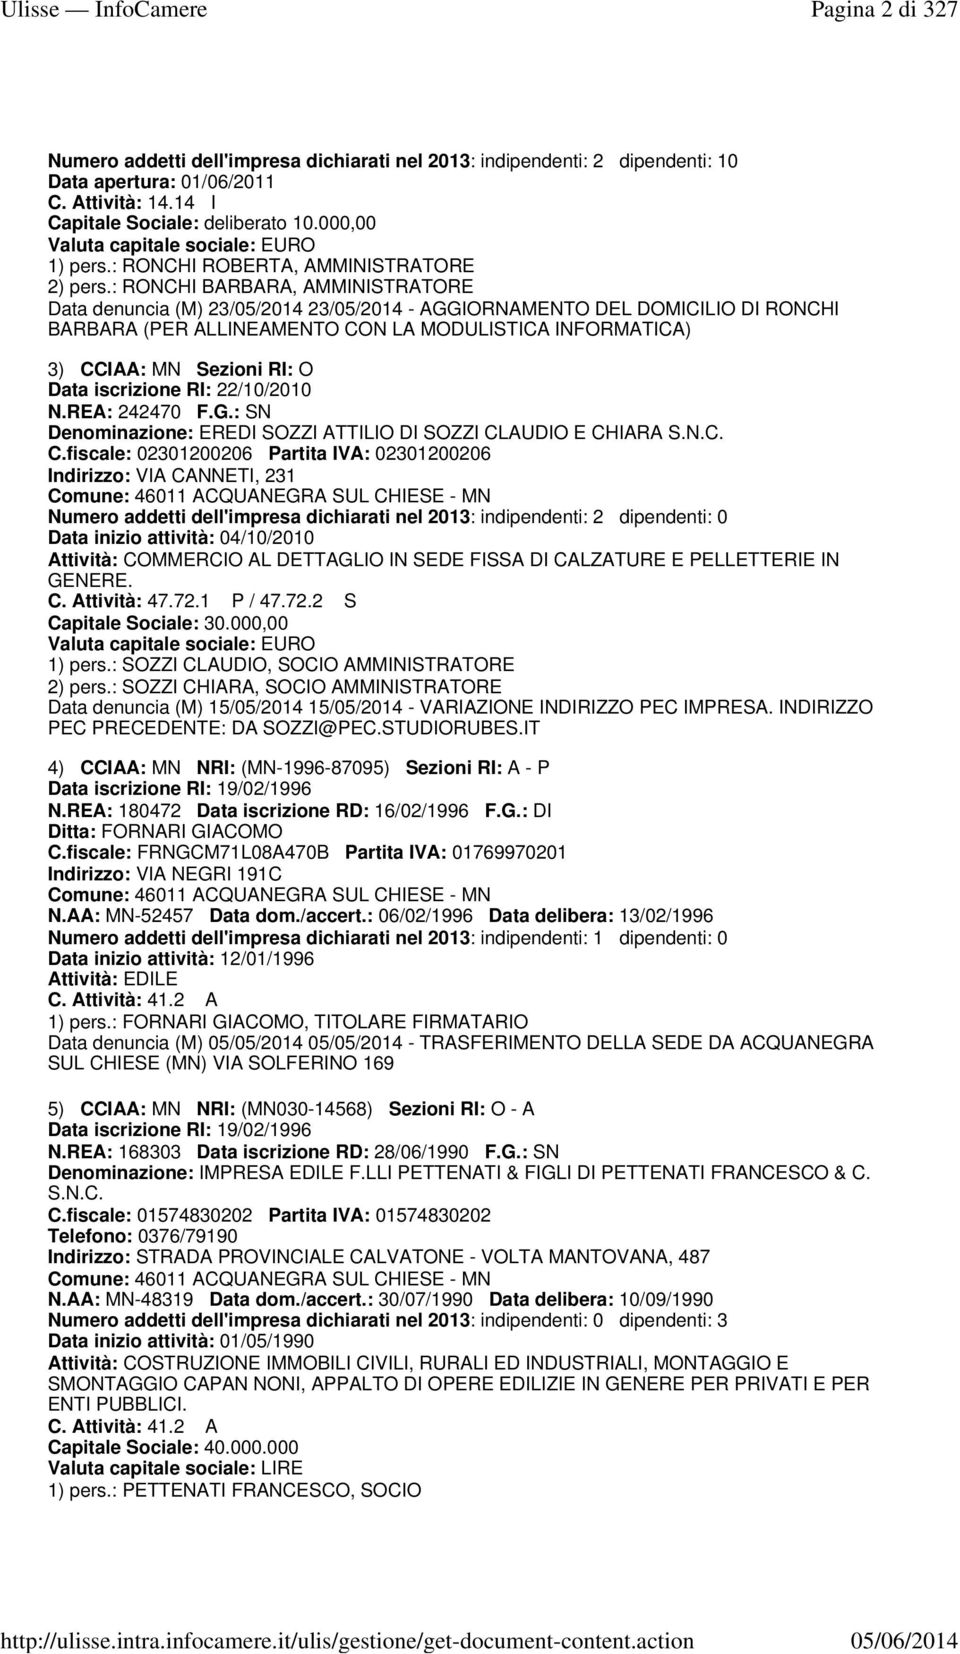 : RONCHI BARBARA, AMMINISTRATORE Data denuncia (M) 23/05/2014 23/05/2014 - AGGIORNAMENTO DEL DOMICILIO DI RONCHI BARBARA (PER ALLINEAMENTO CON LA MODULISTICA INFORMATICA) 3) CCIAA: MN Sezioni RI: O